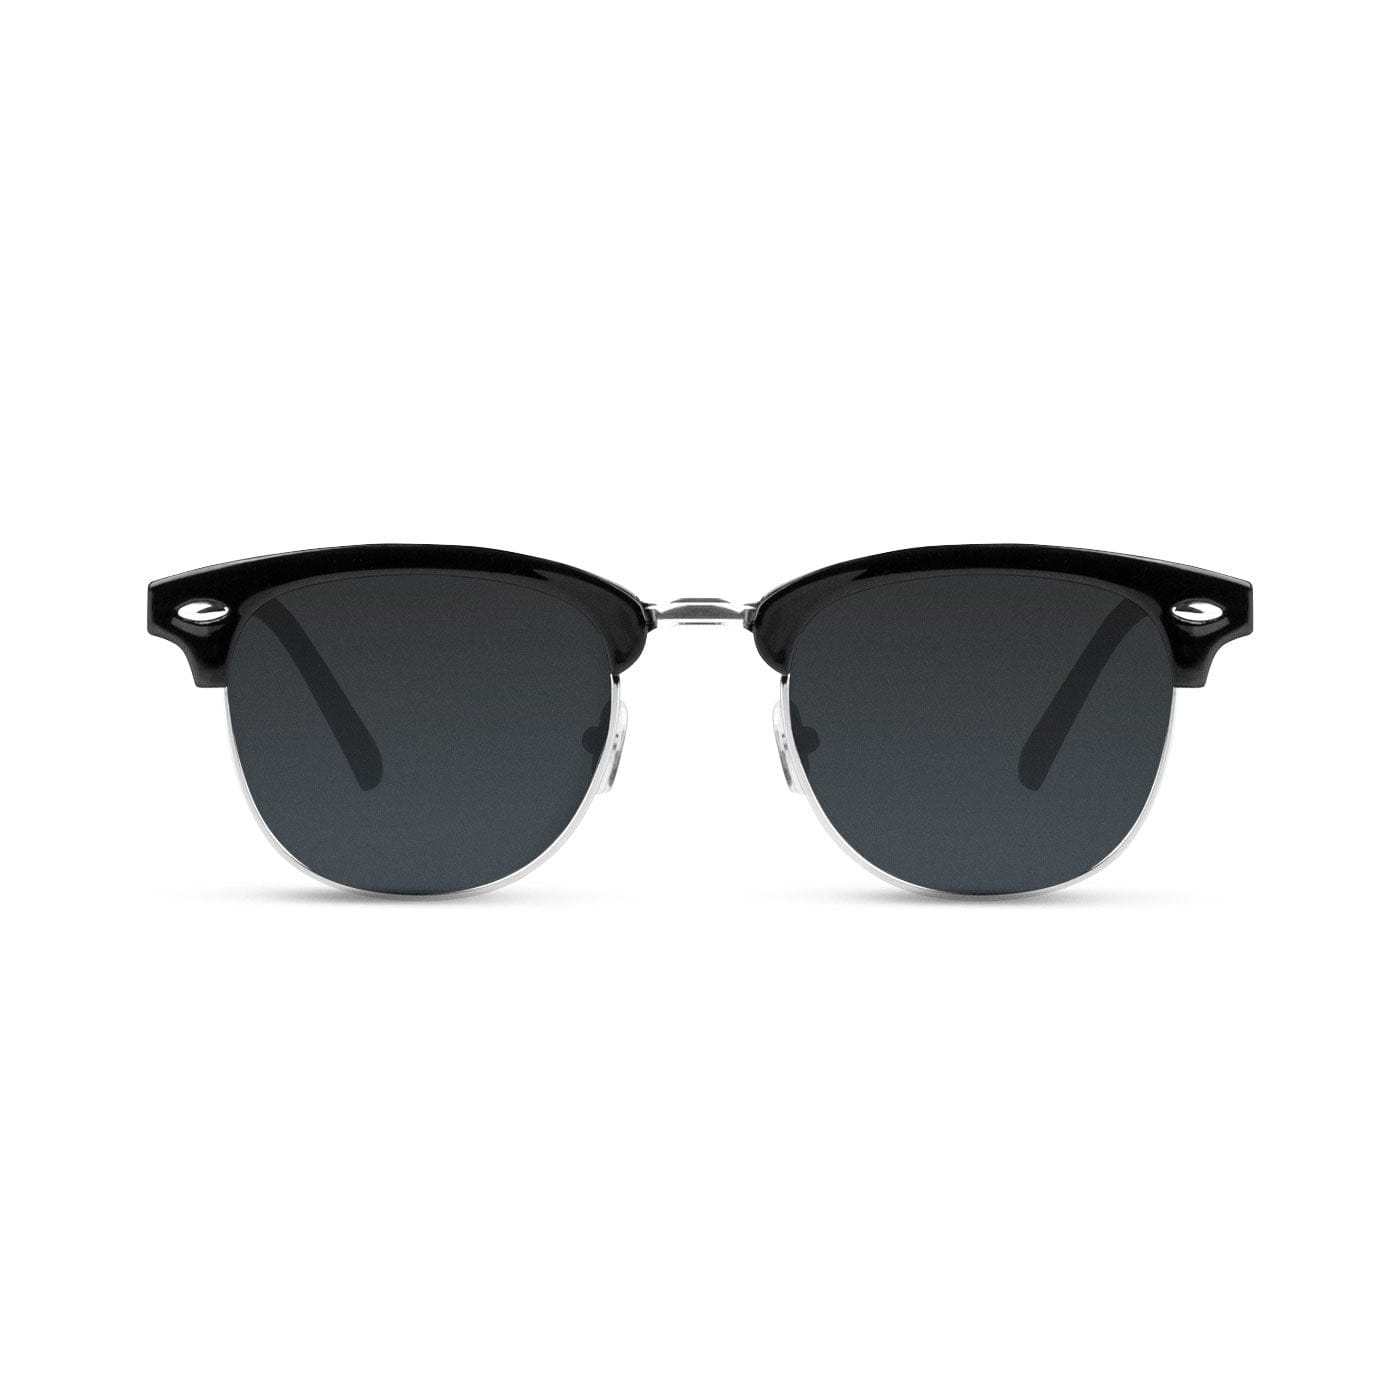 Malaca Shinny Black Silver / Grad Black Sunglasses